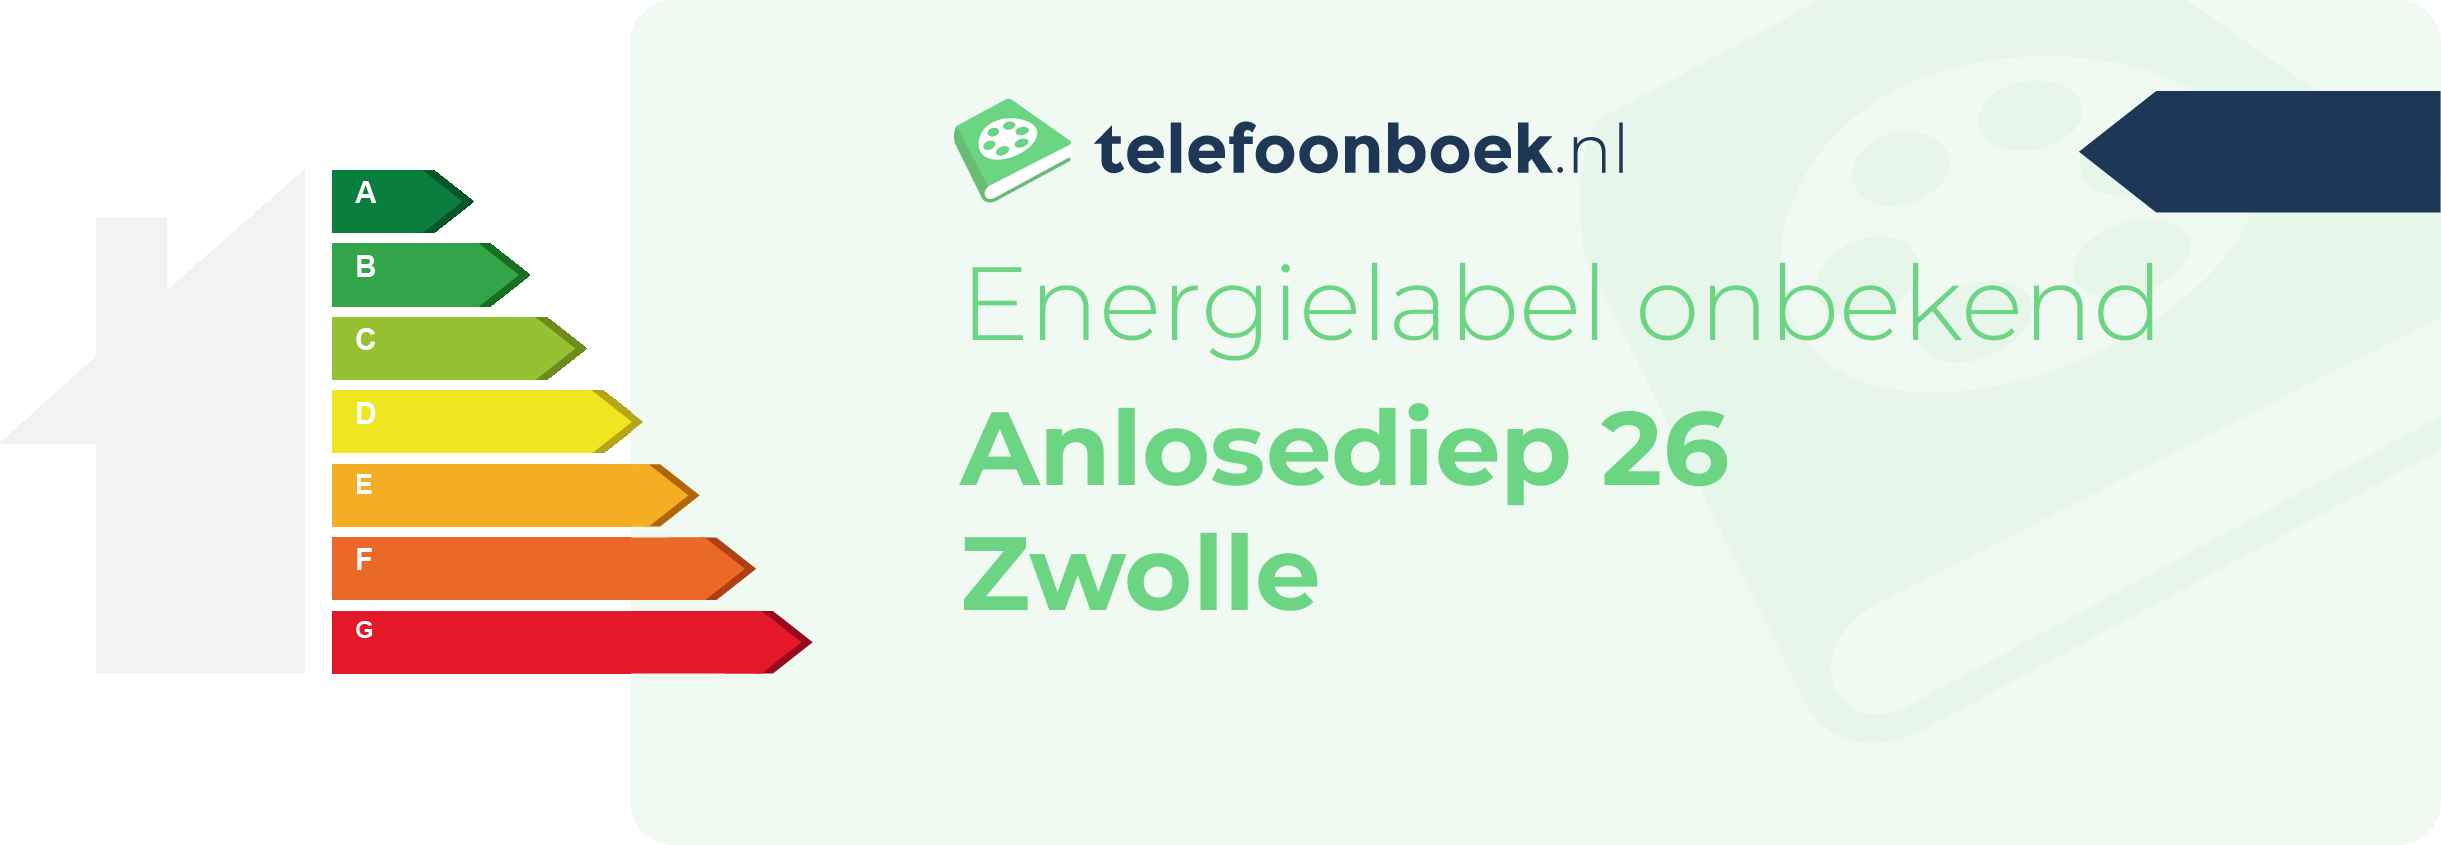 Energielabel Anlosediep 26 Zwolle